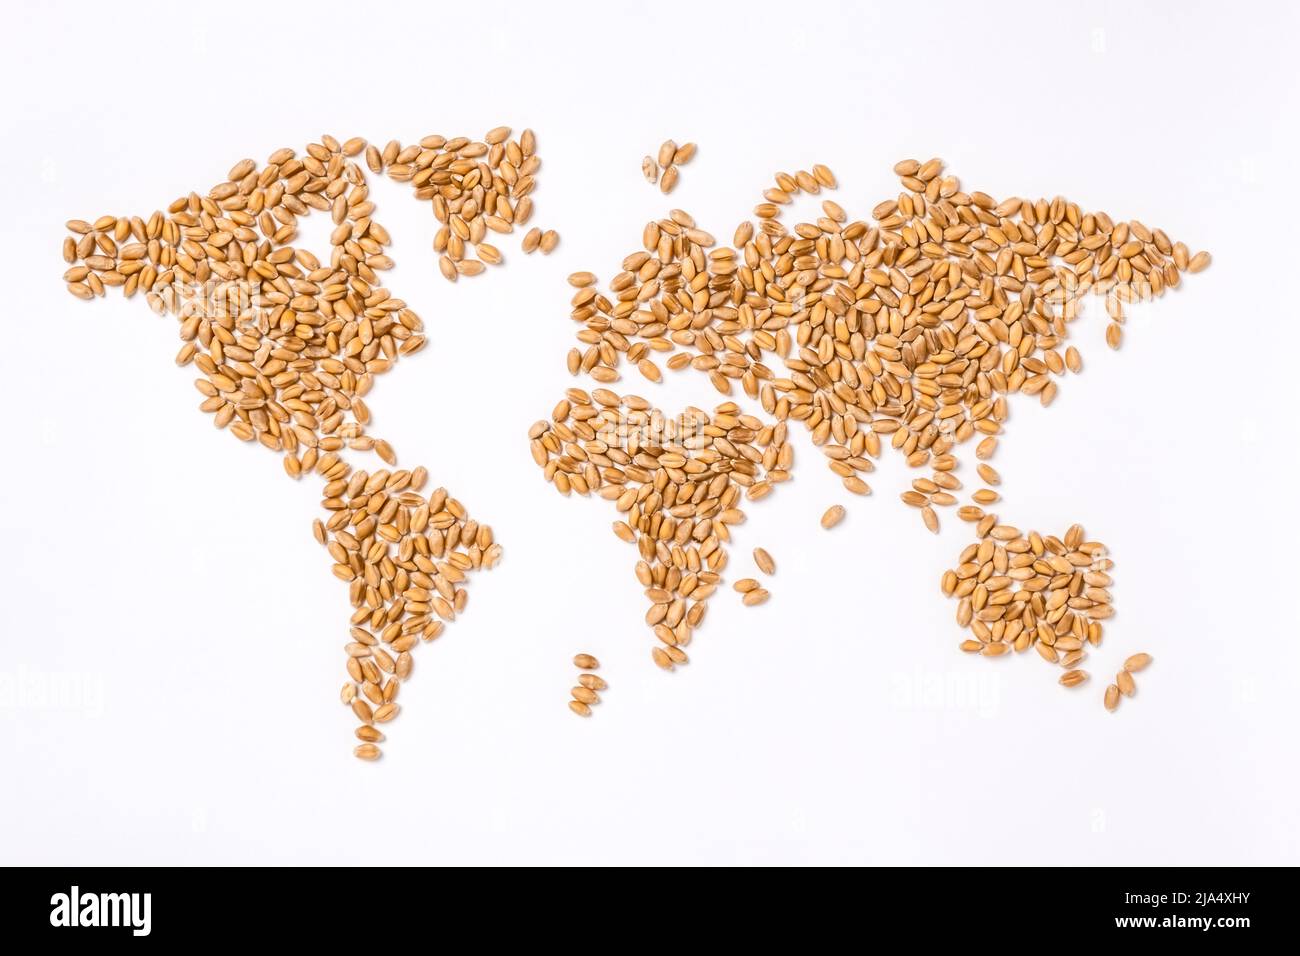 Weltkarte aus Weizenkörnern. Getreidekontinente. Konzept der globalen Nahrungsmittelknappheit und Hunger, des Exports und der Nahrungsmittelversorgungskette. Stockfoto